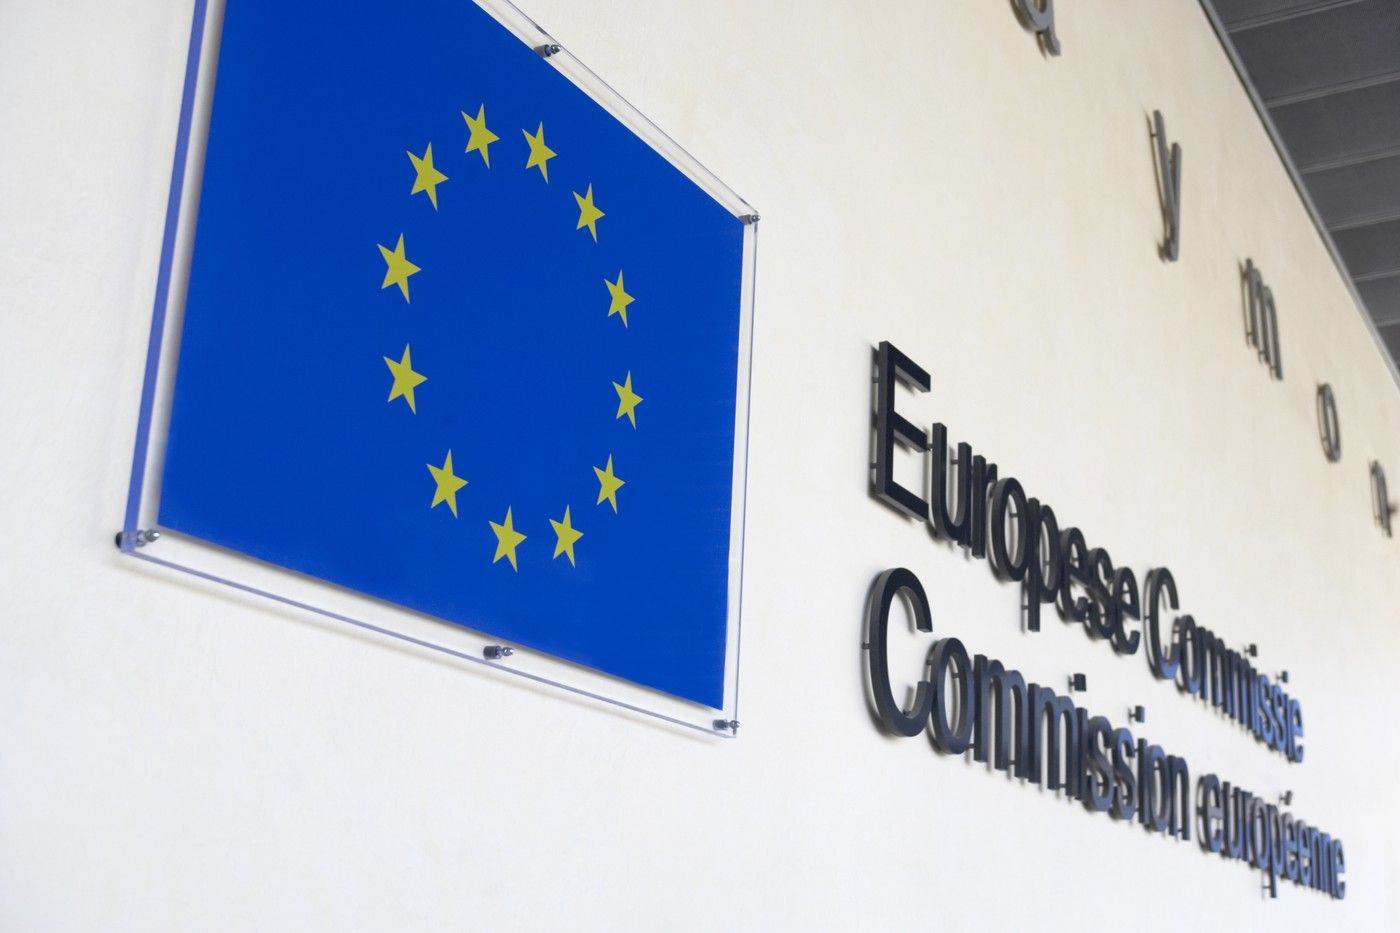  European Commission Europska komisija.jpg 